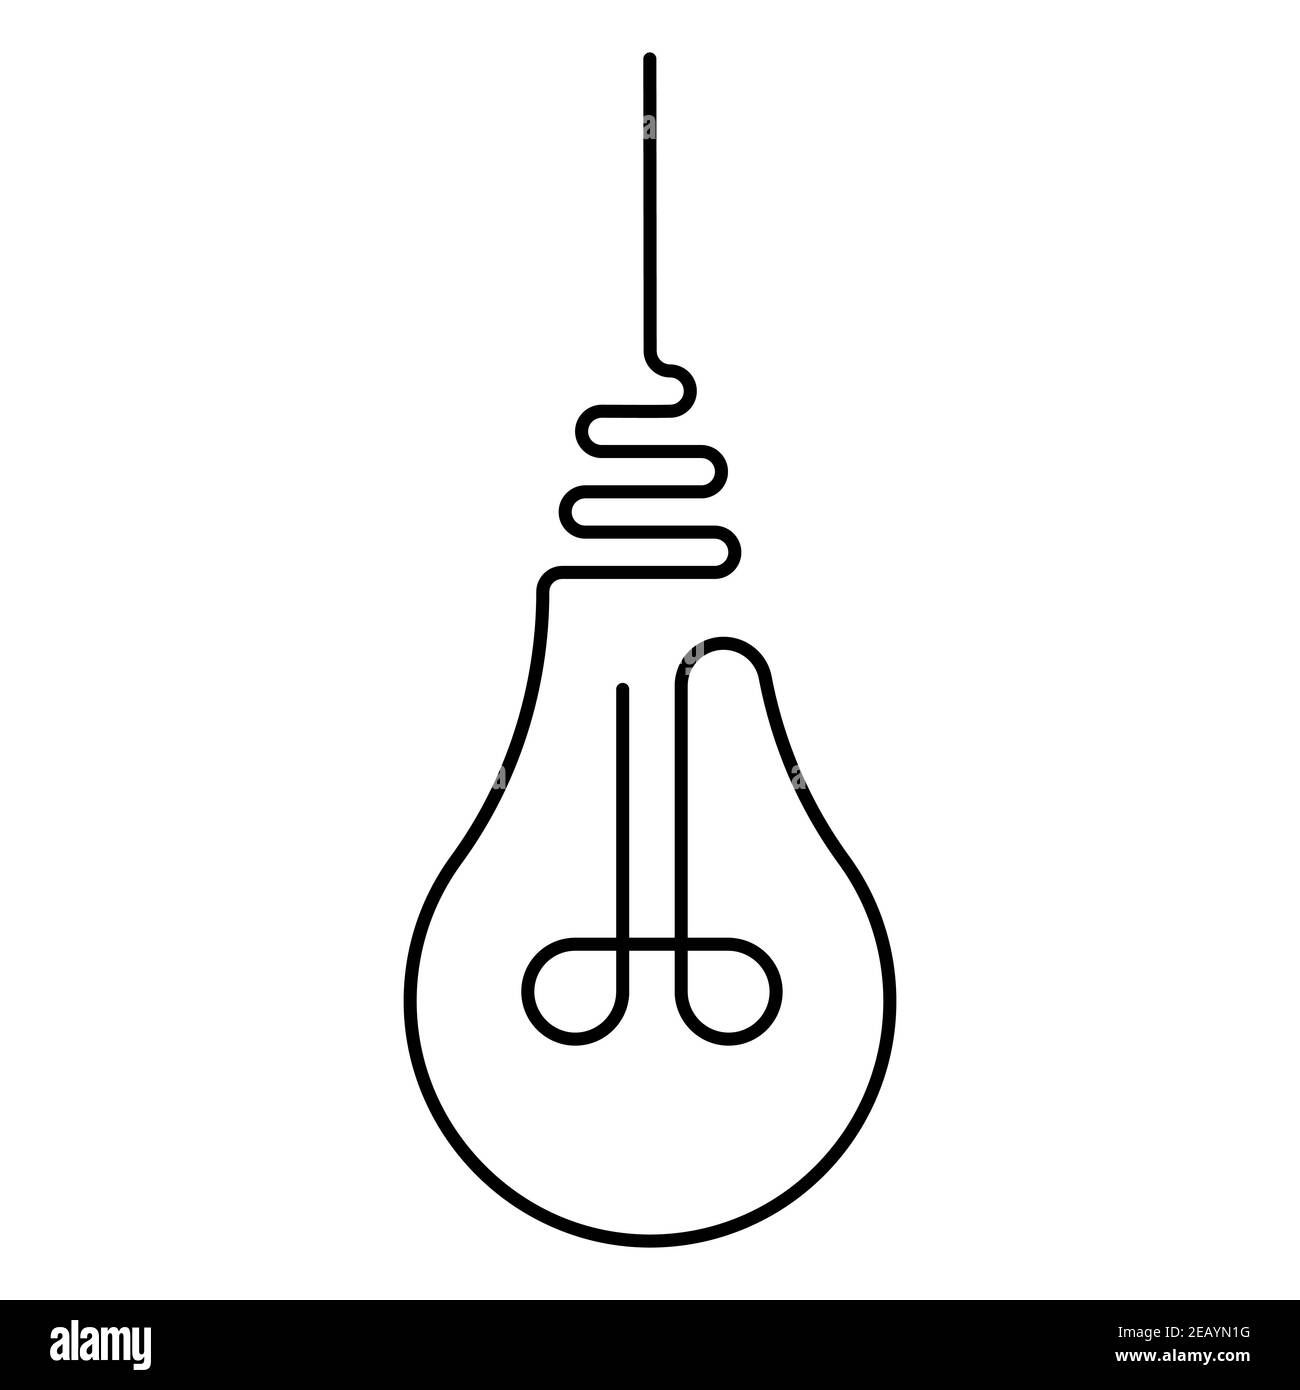 la lampadina a incandescenza appesa è disegnata con una linea, la lampadina vettoriale con una linea è un simbolo di calore leggero e idee fresche Illustrazione Vettoriale